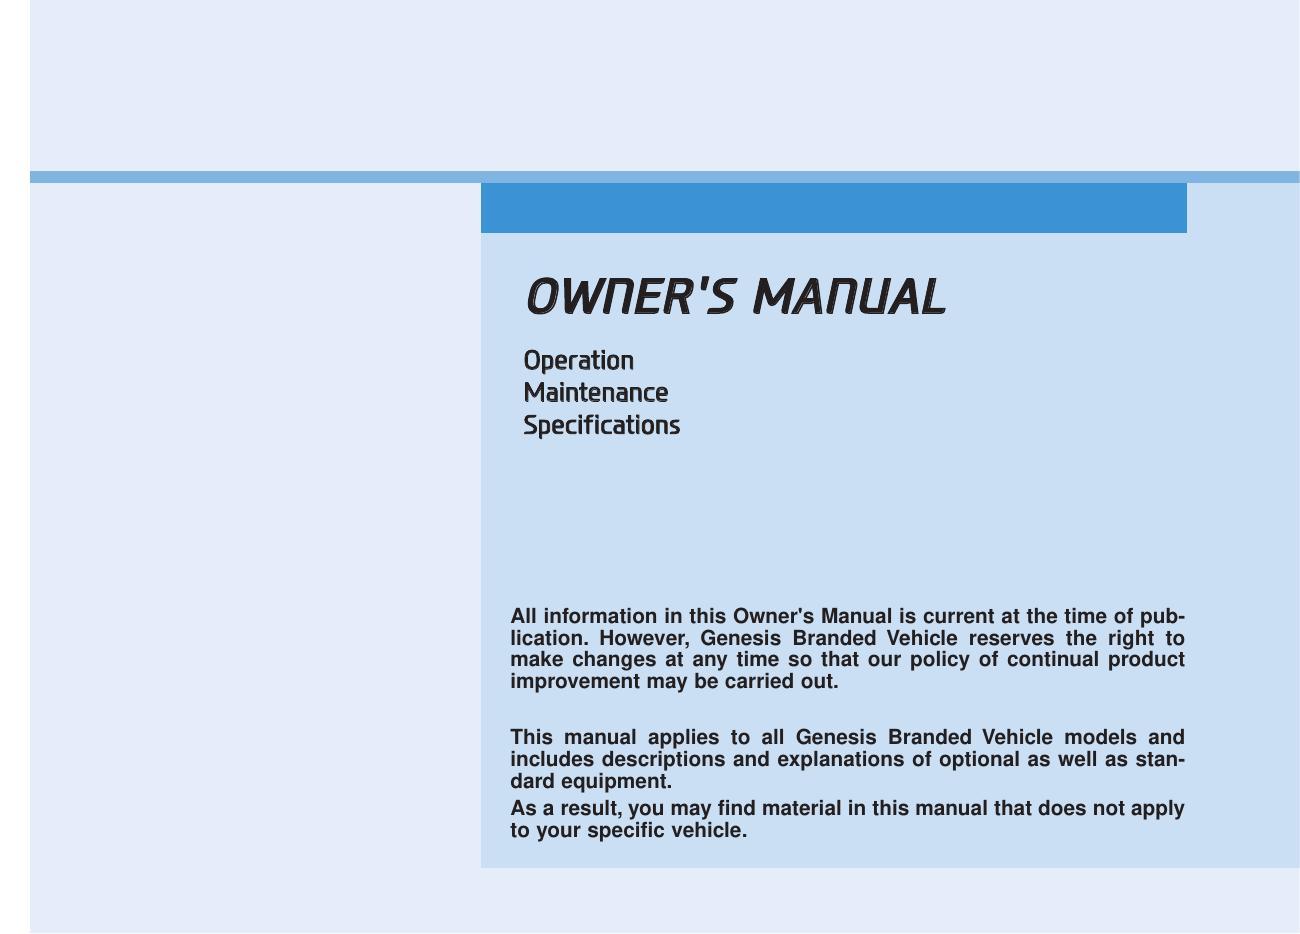 genesis-branded-vehicle-owners-manual-2018.pdf